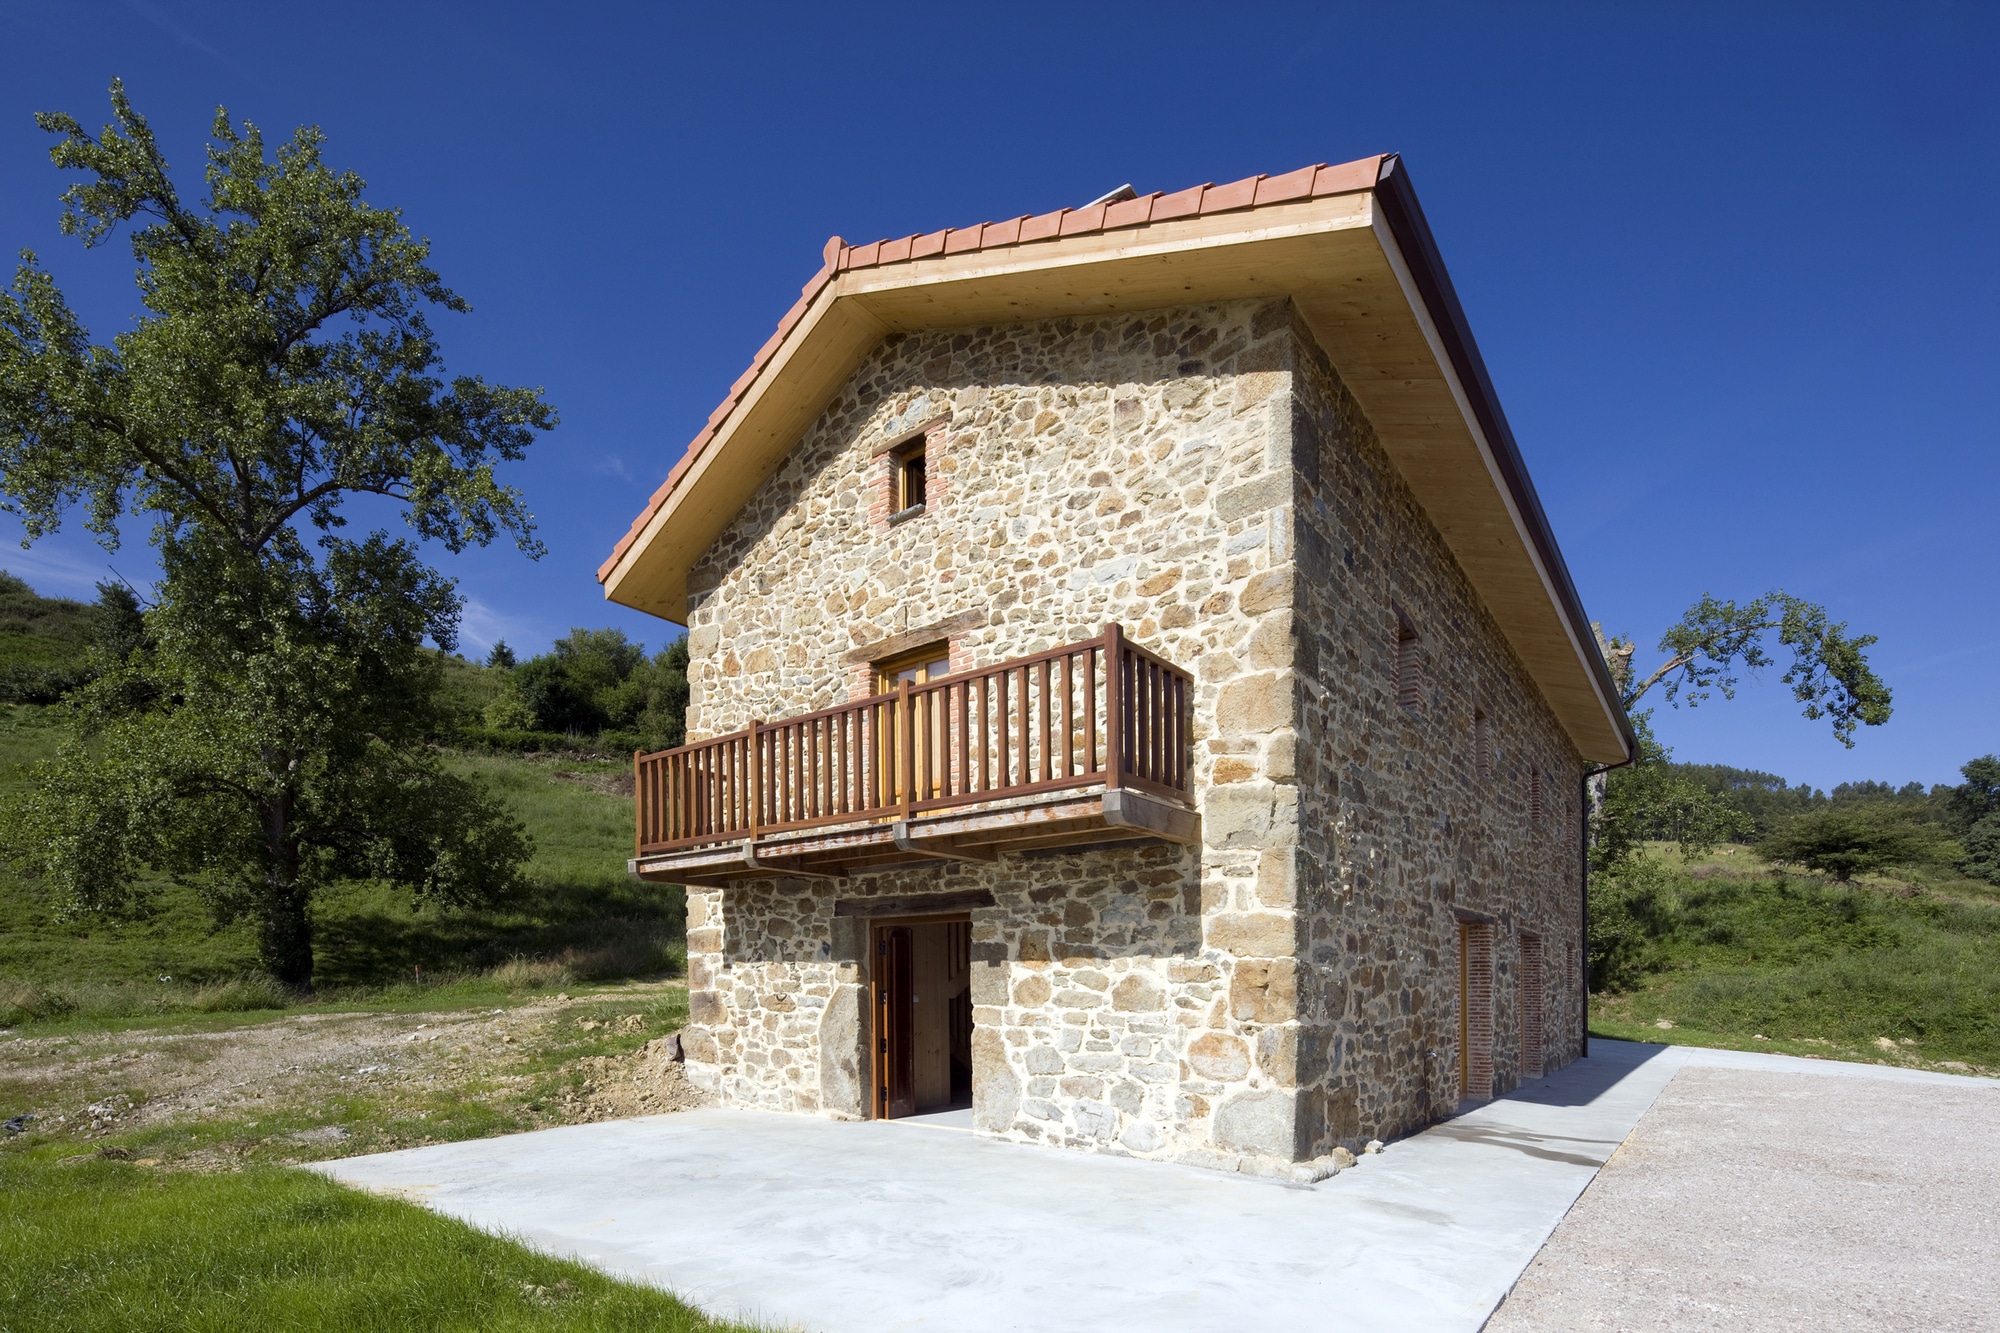 Diseño de casa rústica de piedra [planos] | Construye Hogar